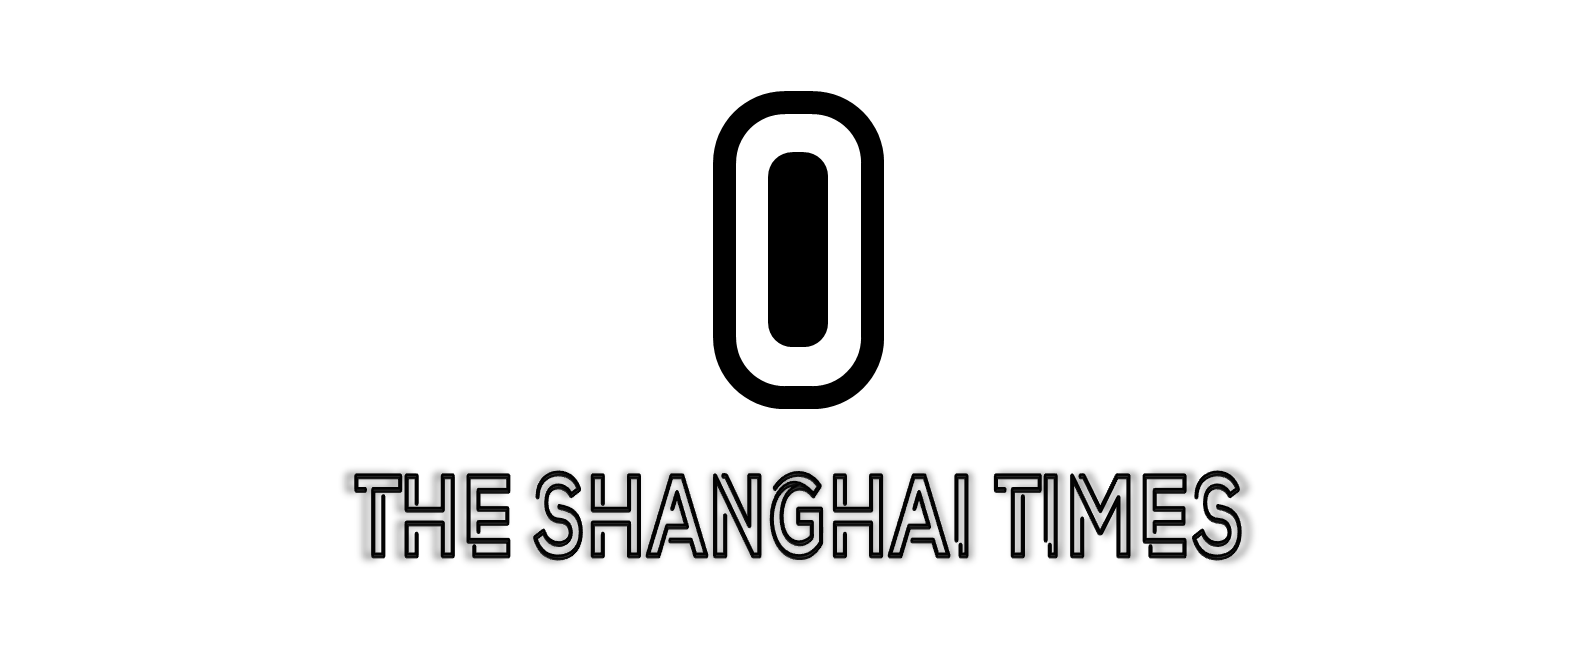 THE SHANGHAI TIMES